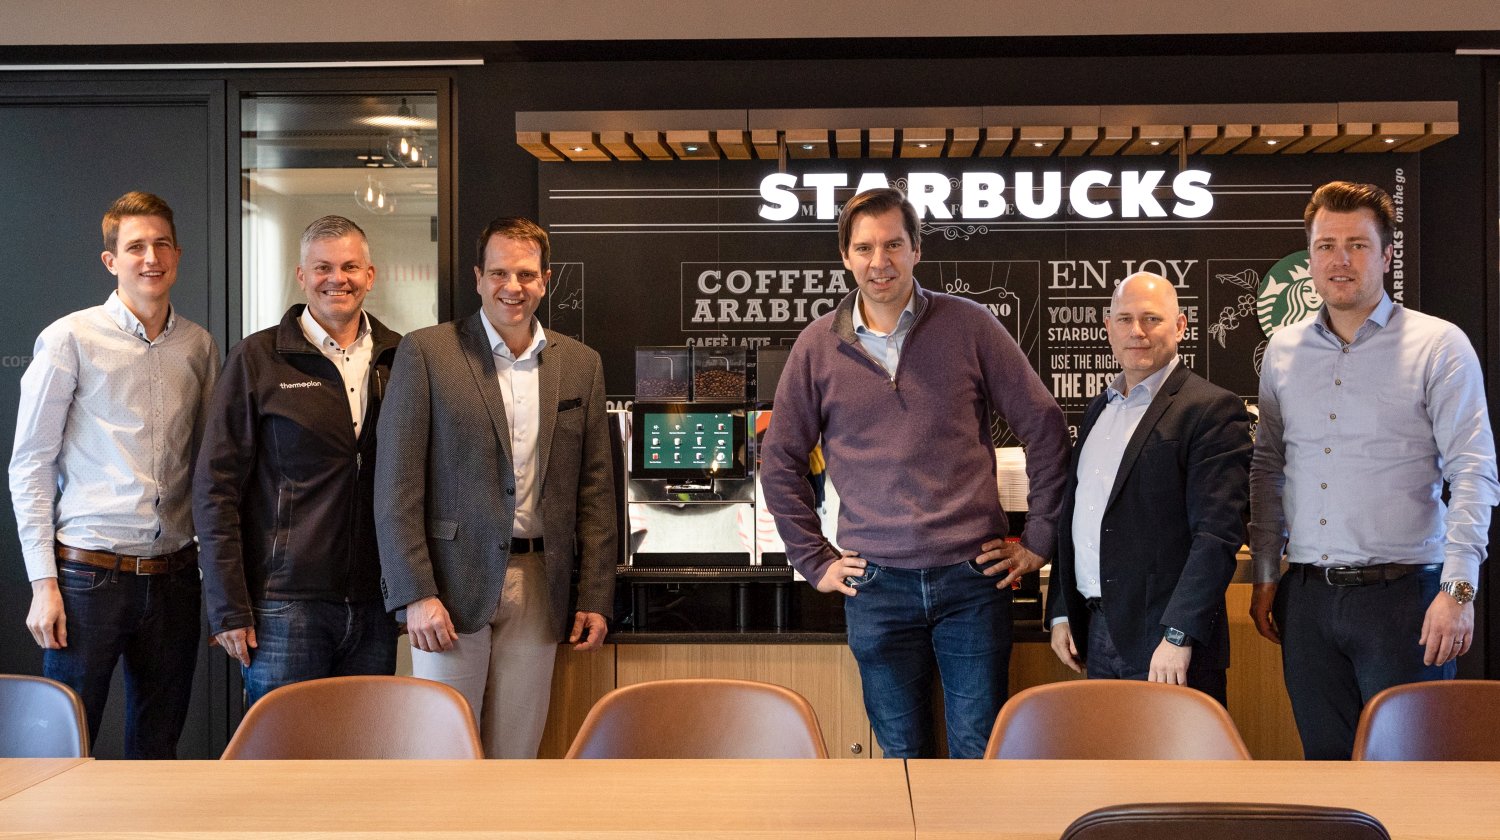 Die Teams um Selecta-CEO Christian Schmitz (3.v.r.) und Thermoplan-CEO Adrian Steiner (3.v.l.) arbeiten künftig bei Selectas Selbstbedienungskonzept „We proudly serve Starbucks“ zusammen. Foto: Selecta Group